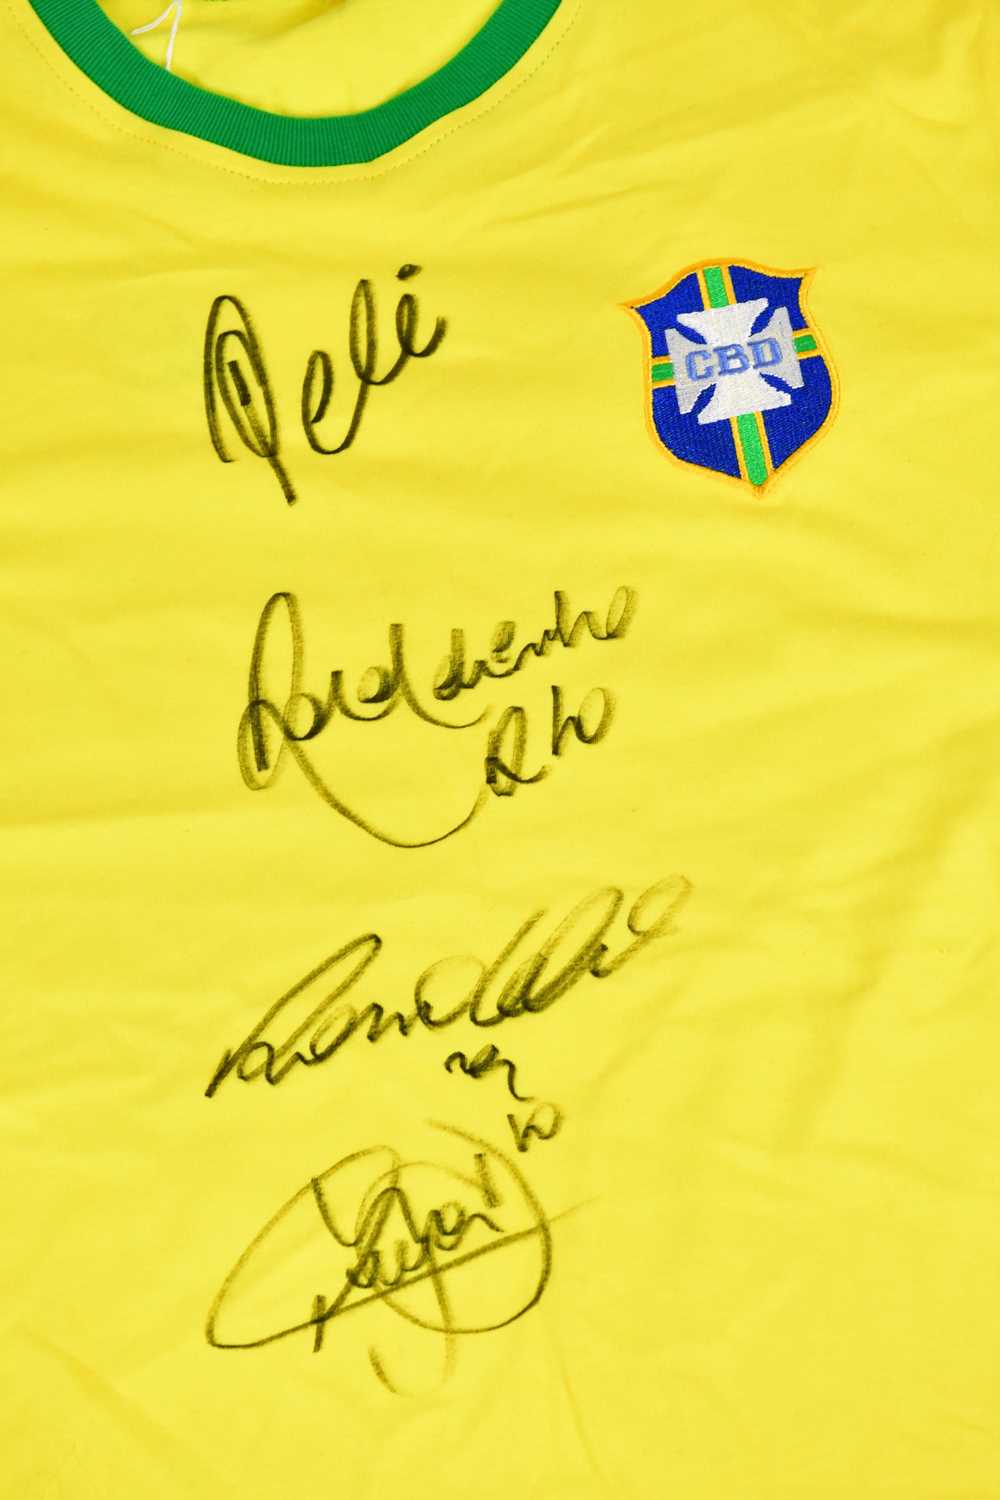 BRAZIL; a 1970s retro style football shirt, signed to the front by Pelé, Ronaldinho, Ronaldo, - Image 2 of 3